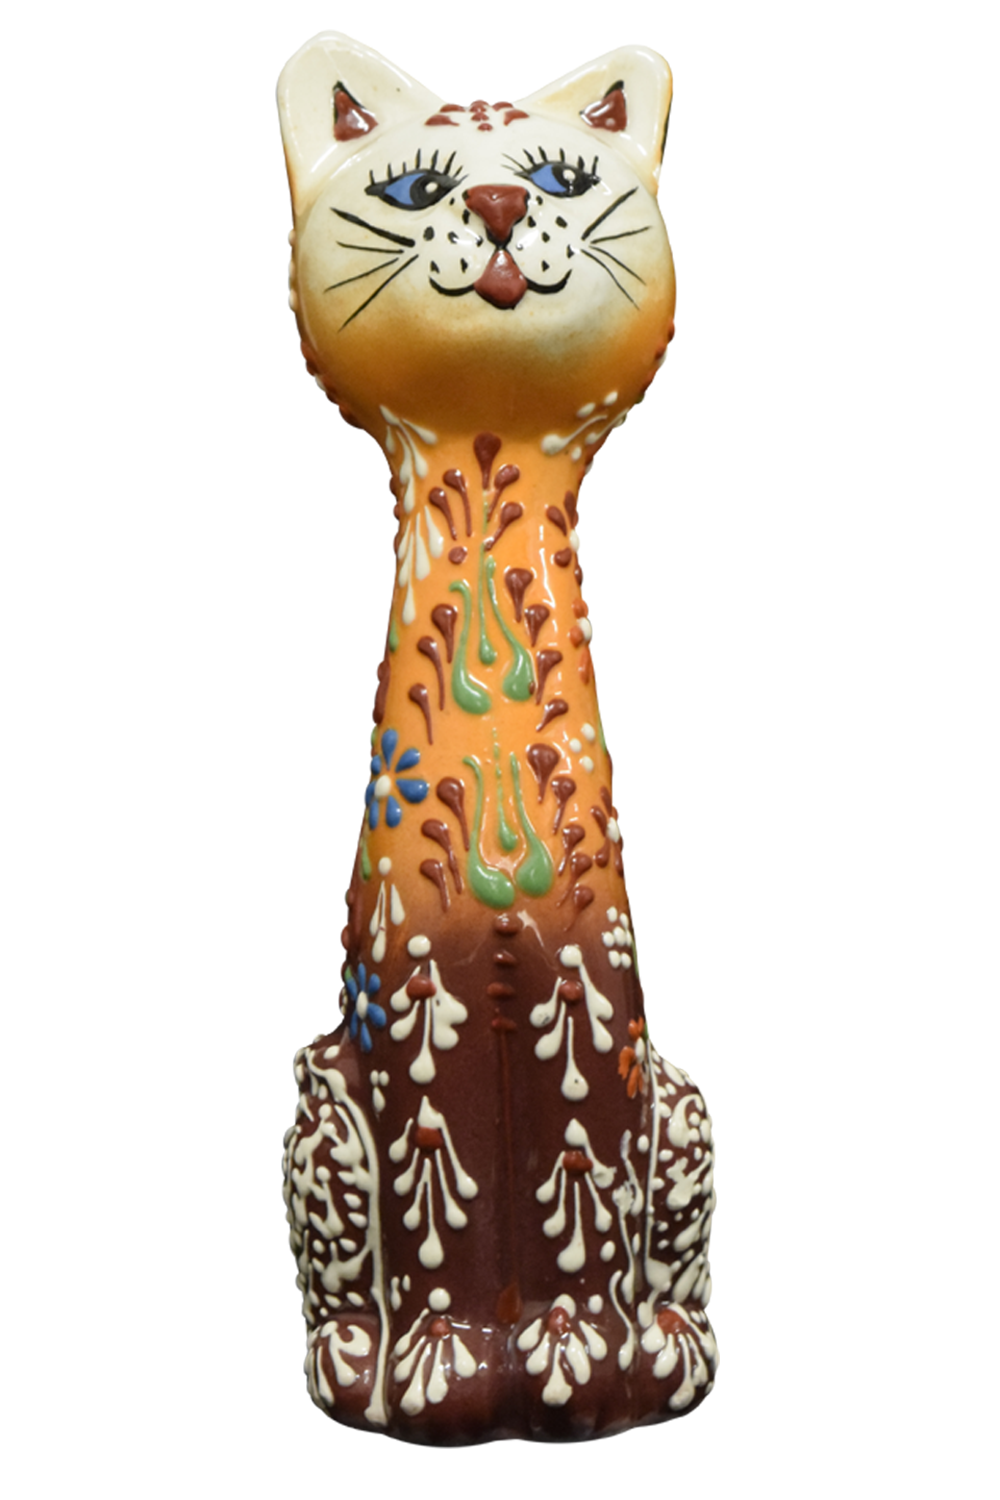 Ceramic standing Cat Figurine 6”